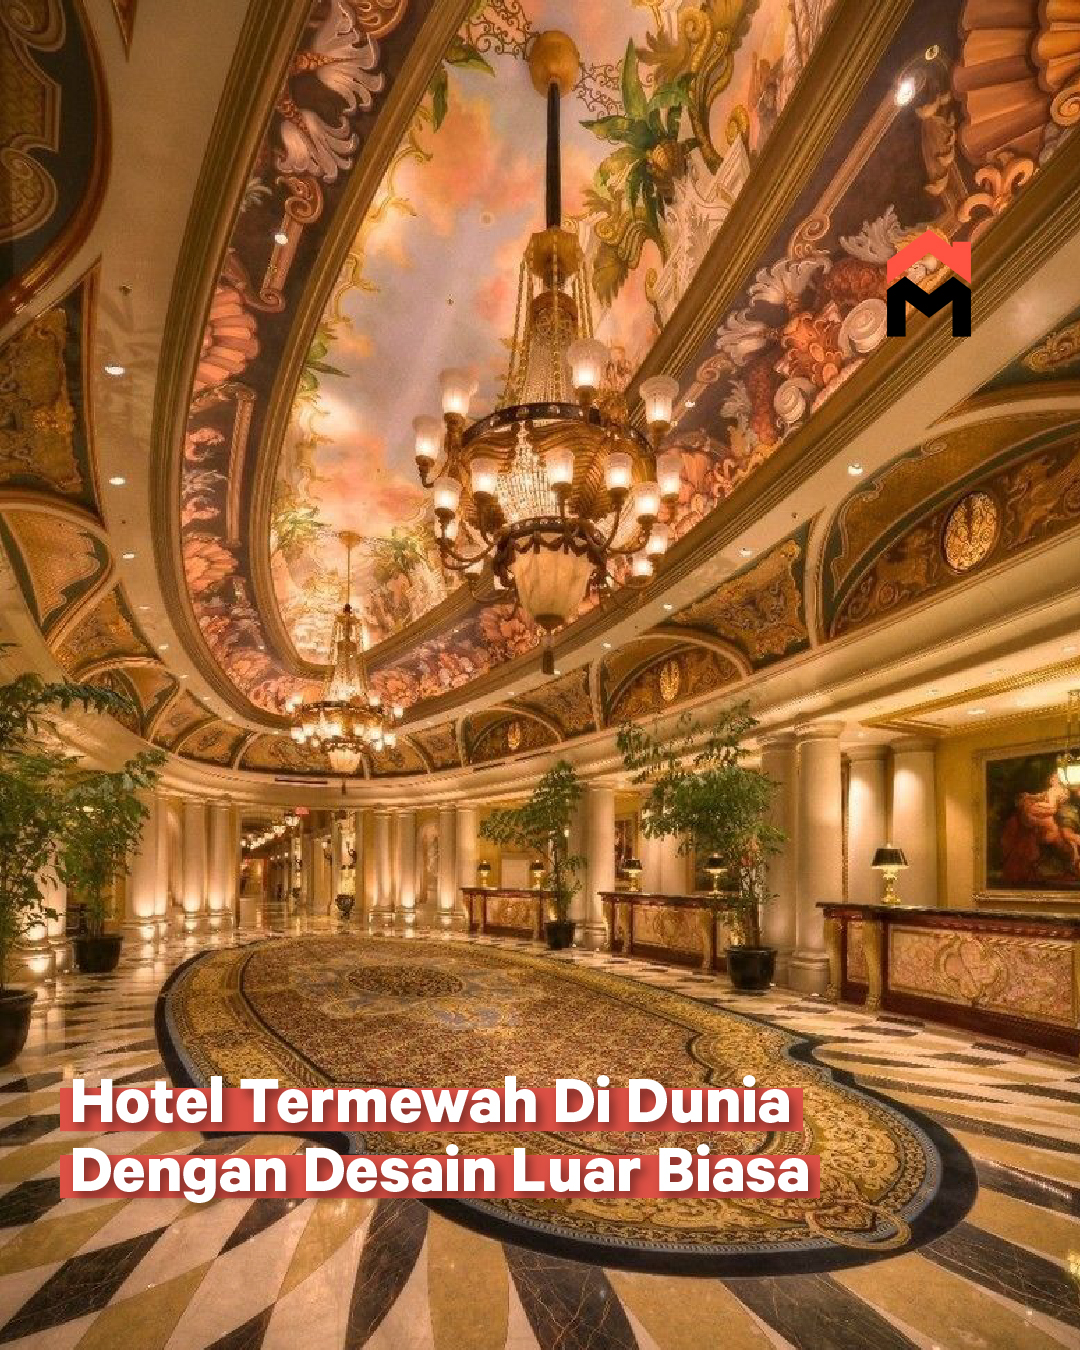 Hotel Termewah di Dunia Ini Punya Desain Yang Luar Biasa image